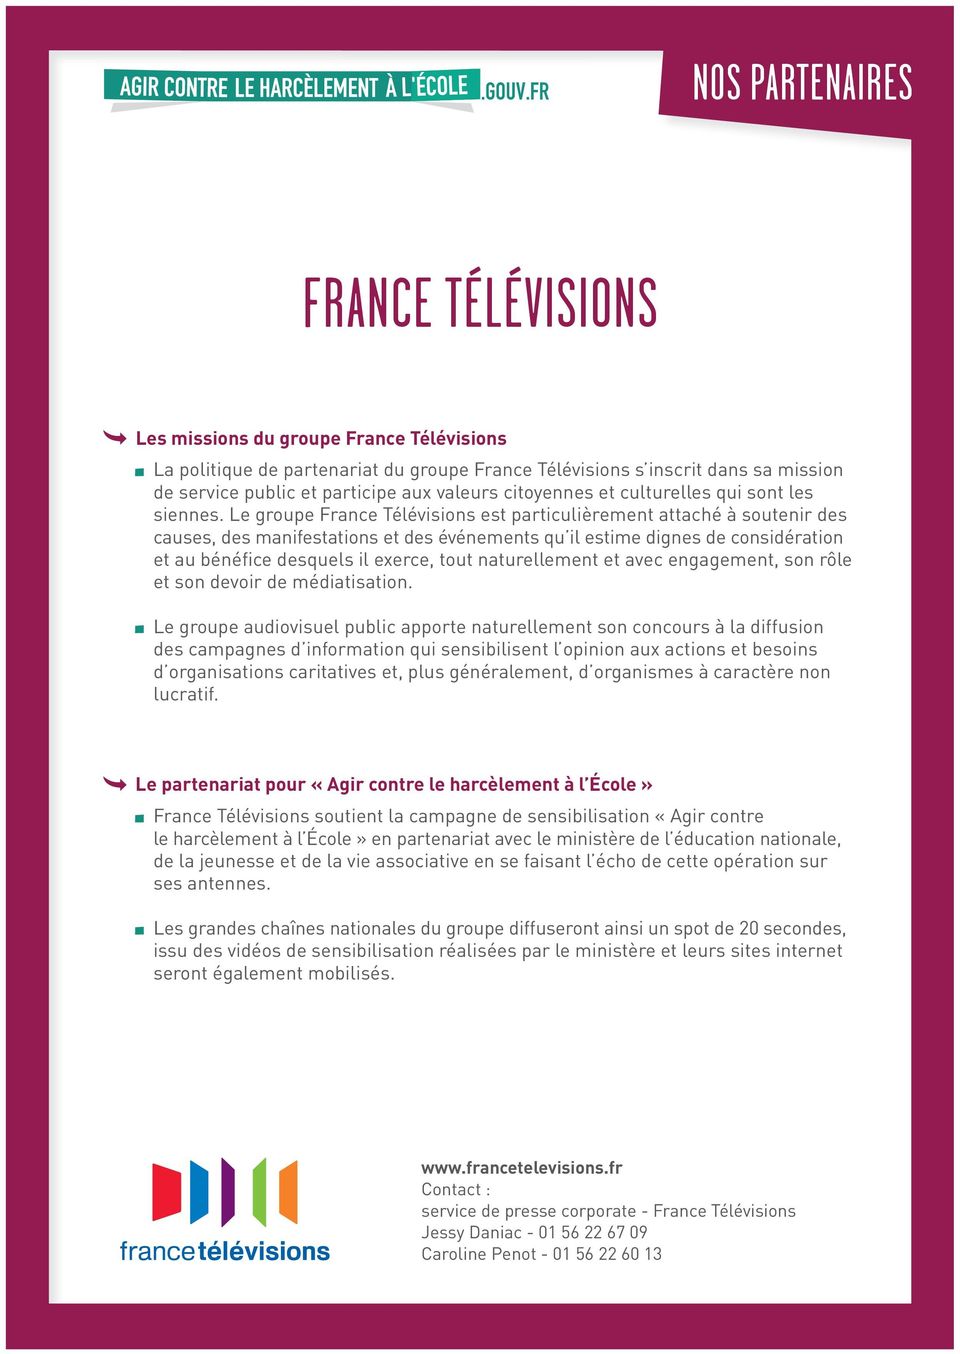 Le groupe France Télévisions est particulièrement attaché à soutenir des causes, des manifestations et des événements qu il estime dignes de considération et au bénéfice desquels il exerce, tout